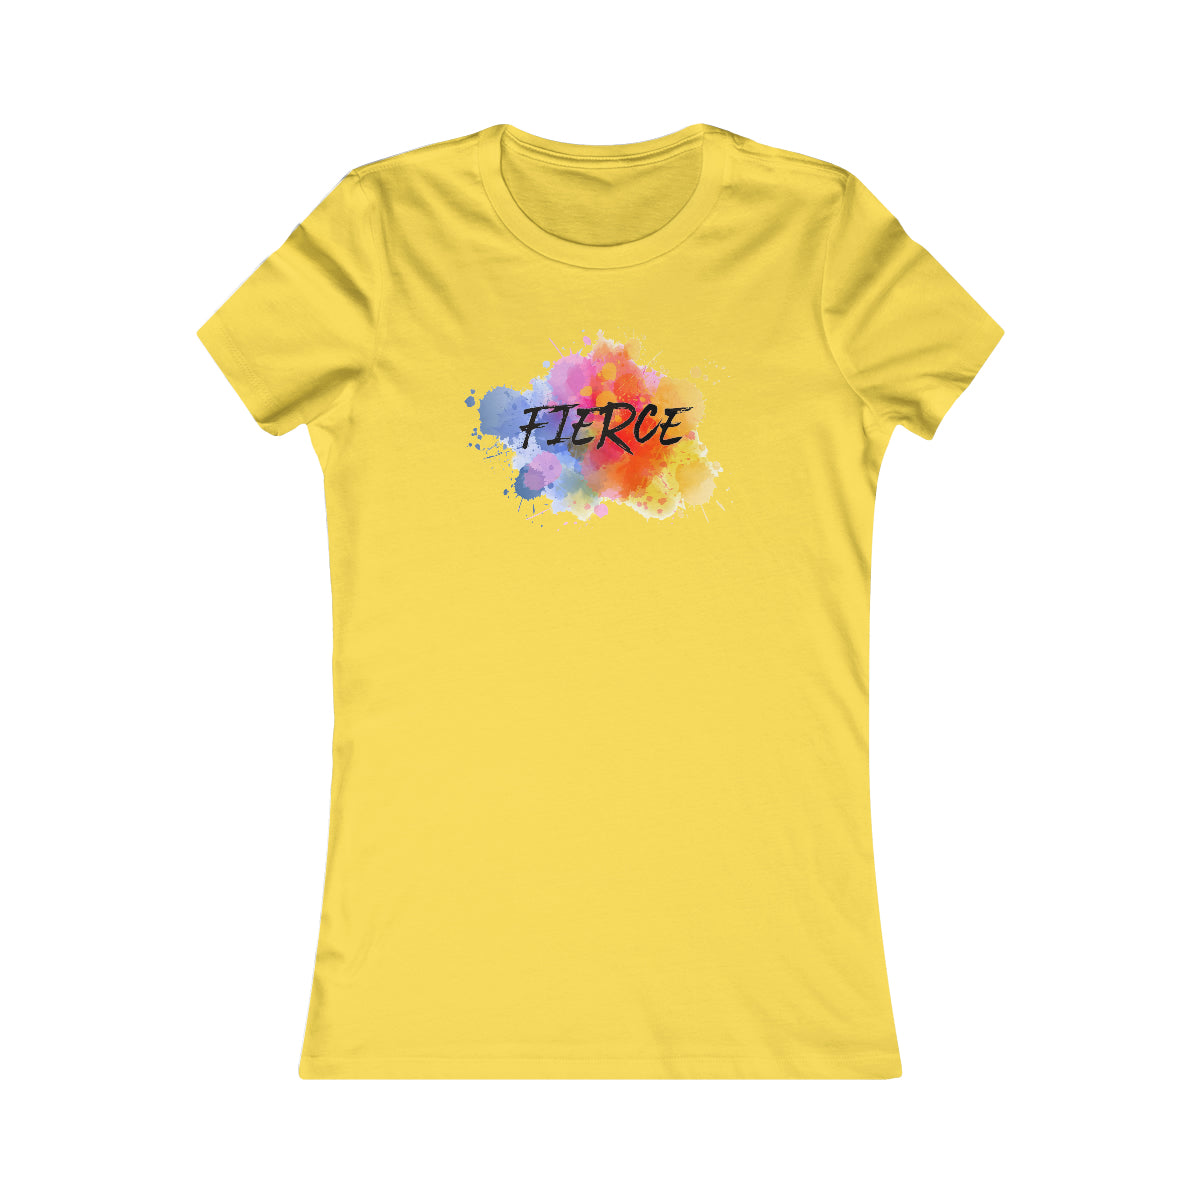 "Fierce" - Women's Favorite Tee - 11 colors